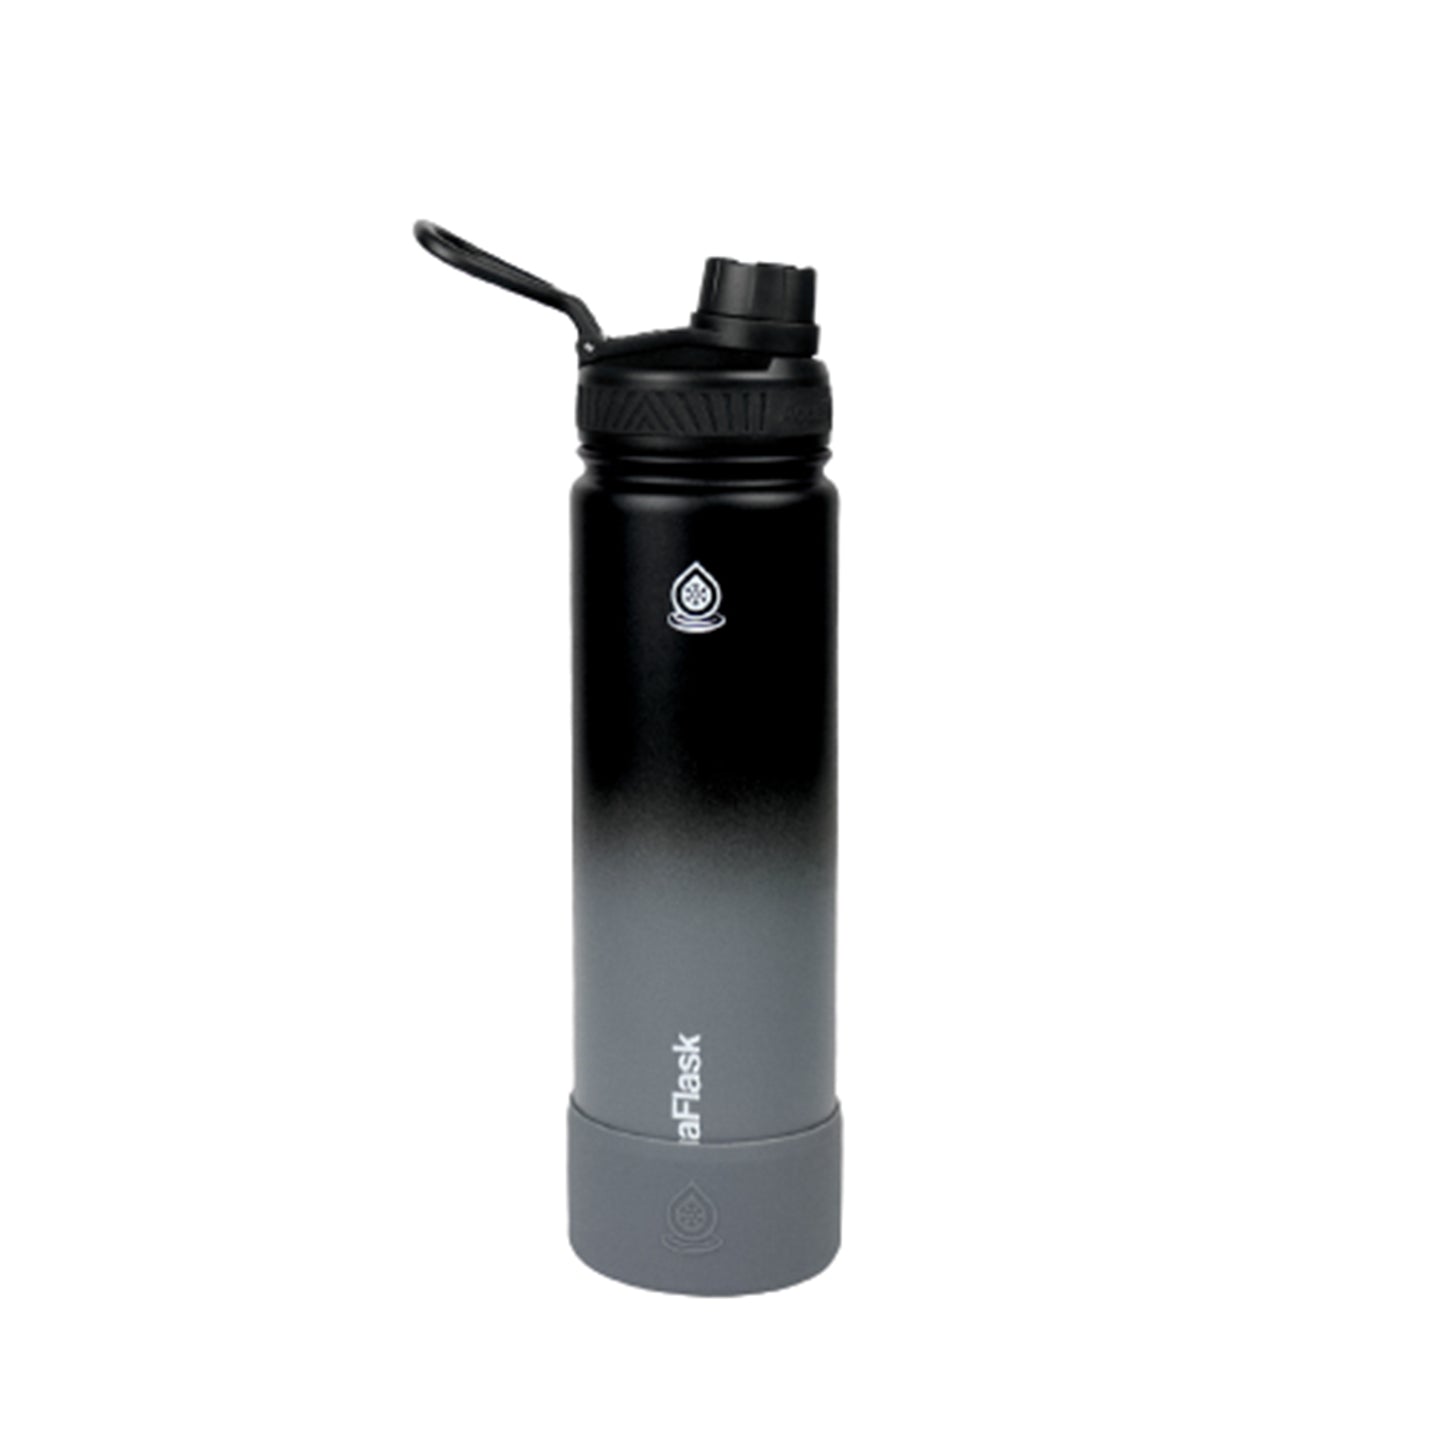 AquaFlask Dream 1 Vacuum Insulated Water Bottles 650ml (22oz)